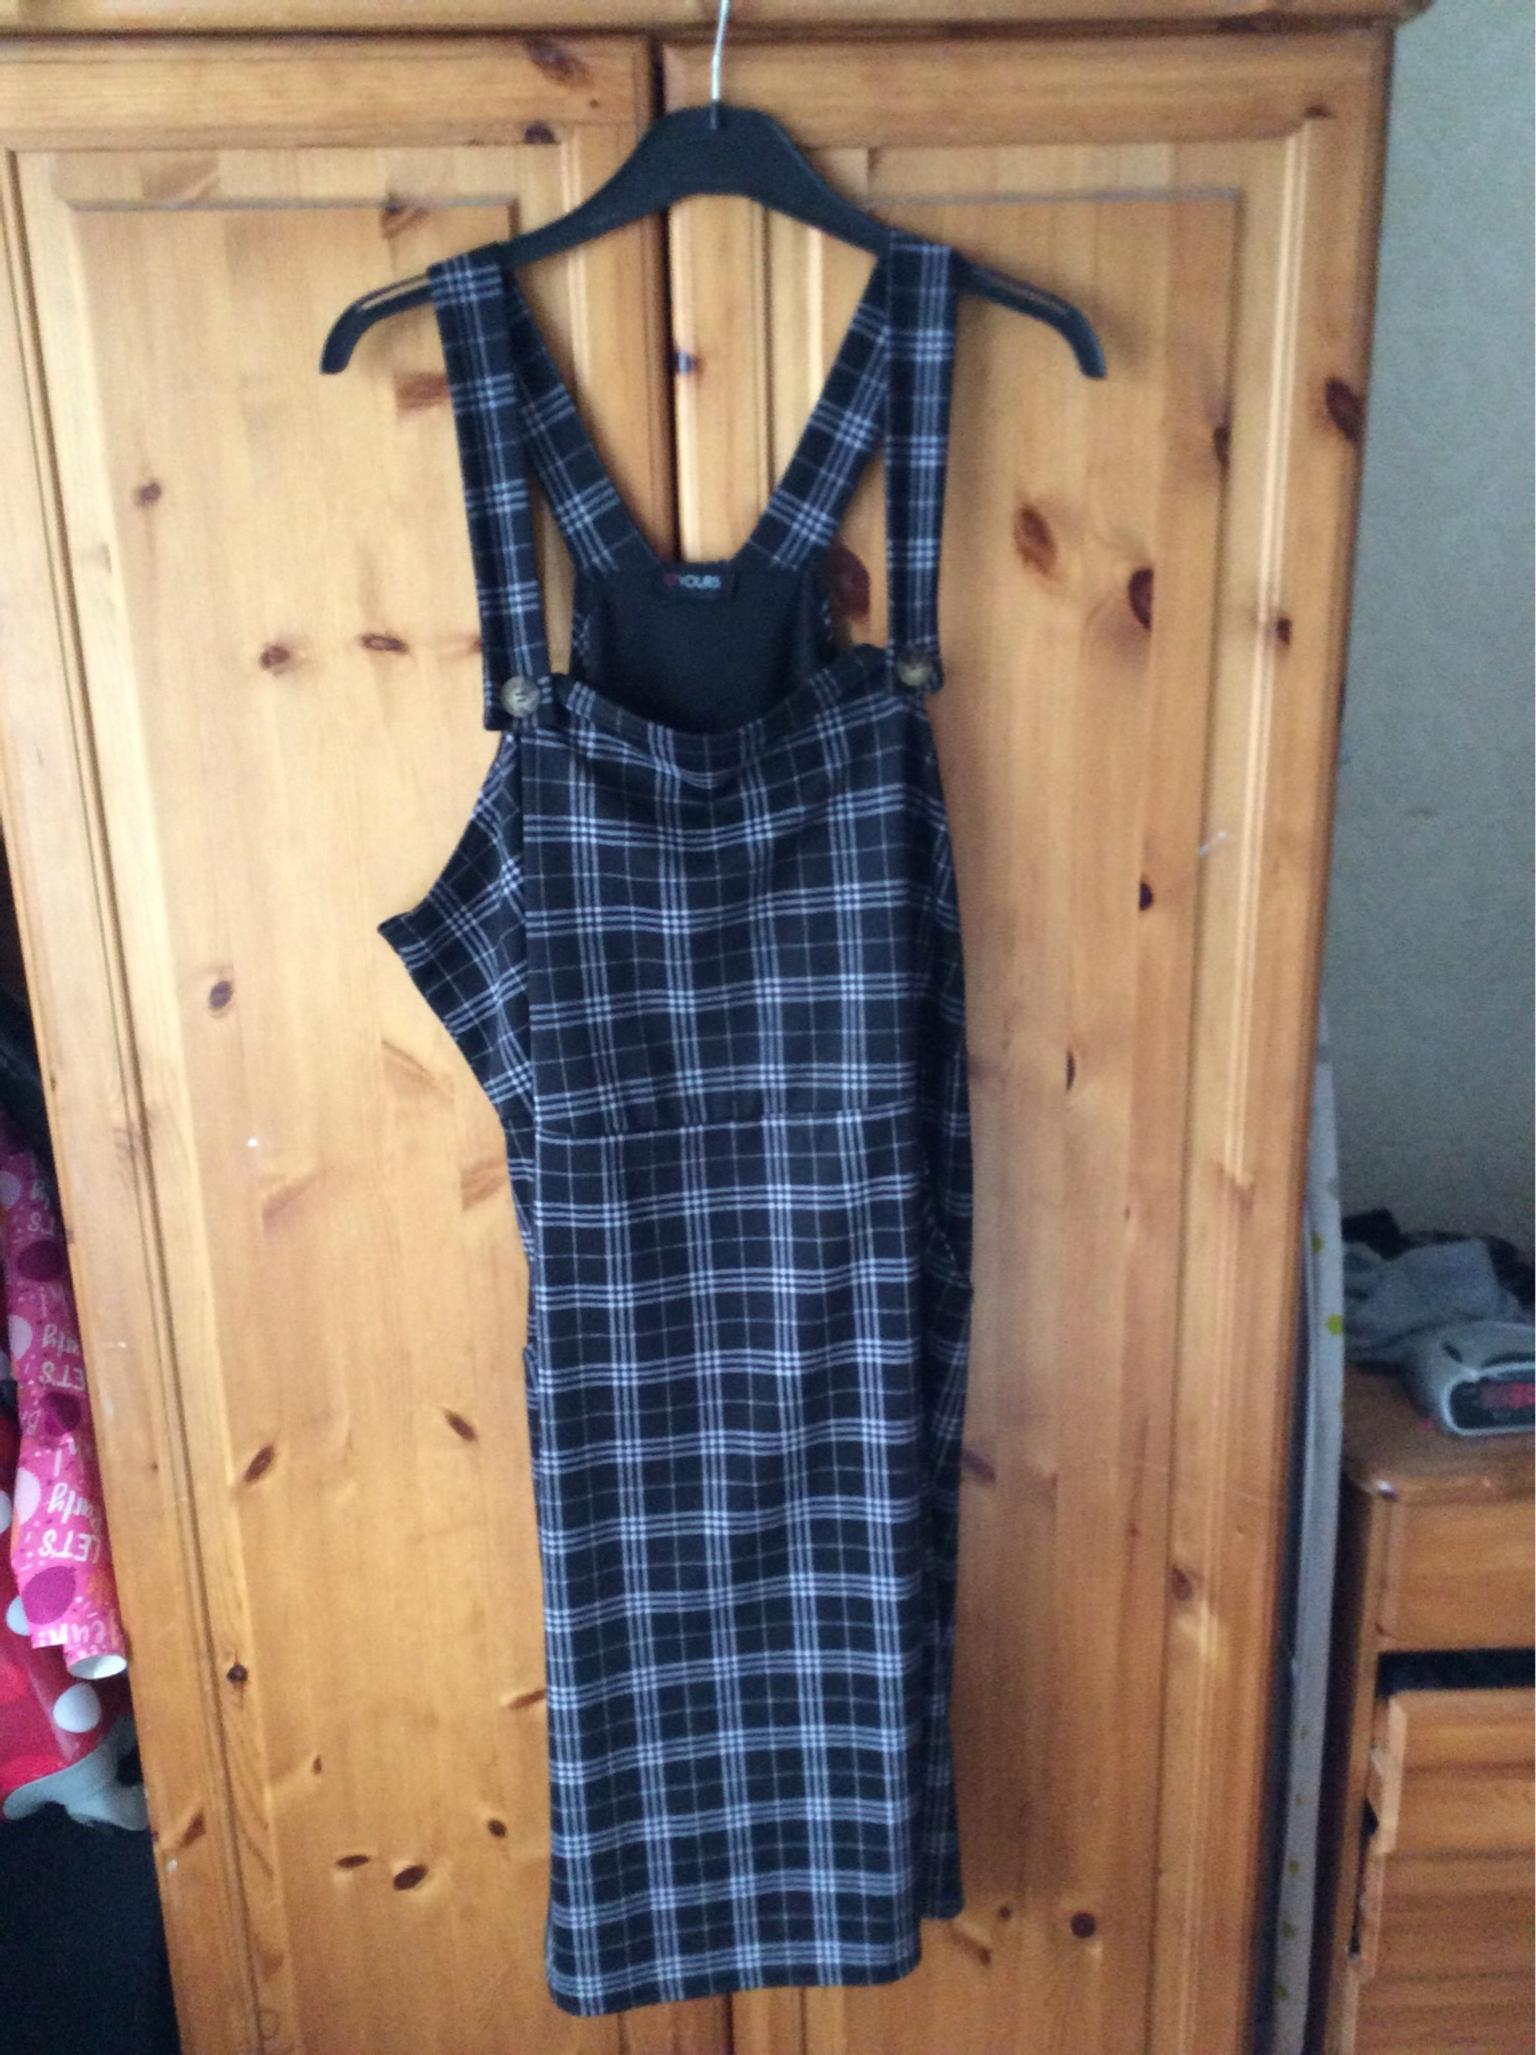 pinafore dress size 22